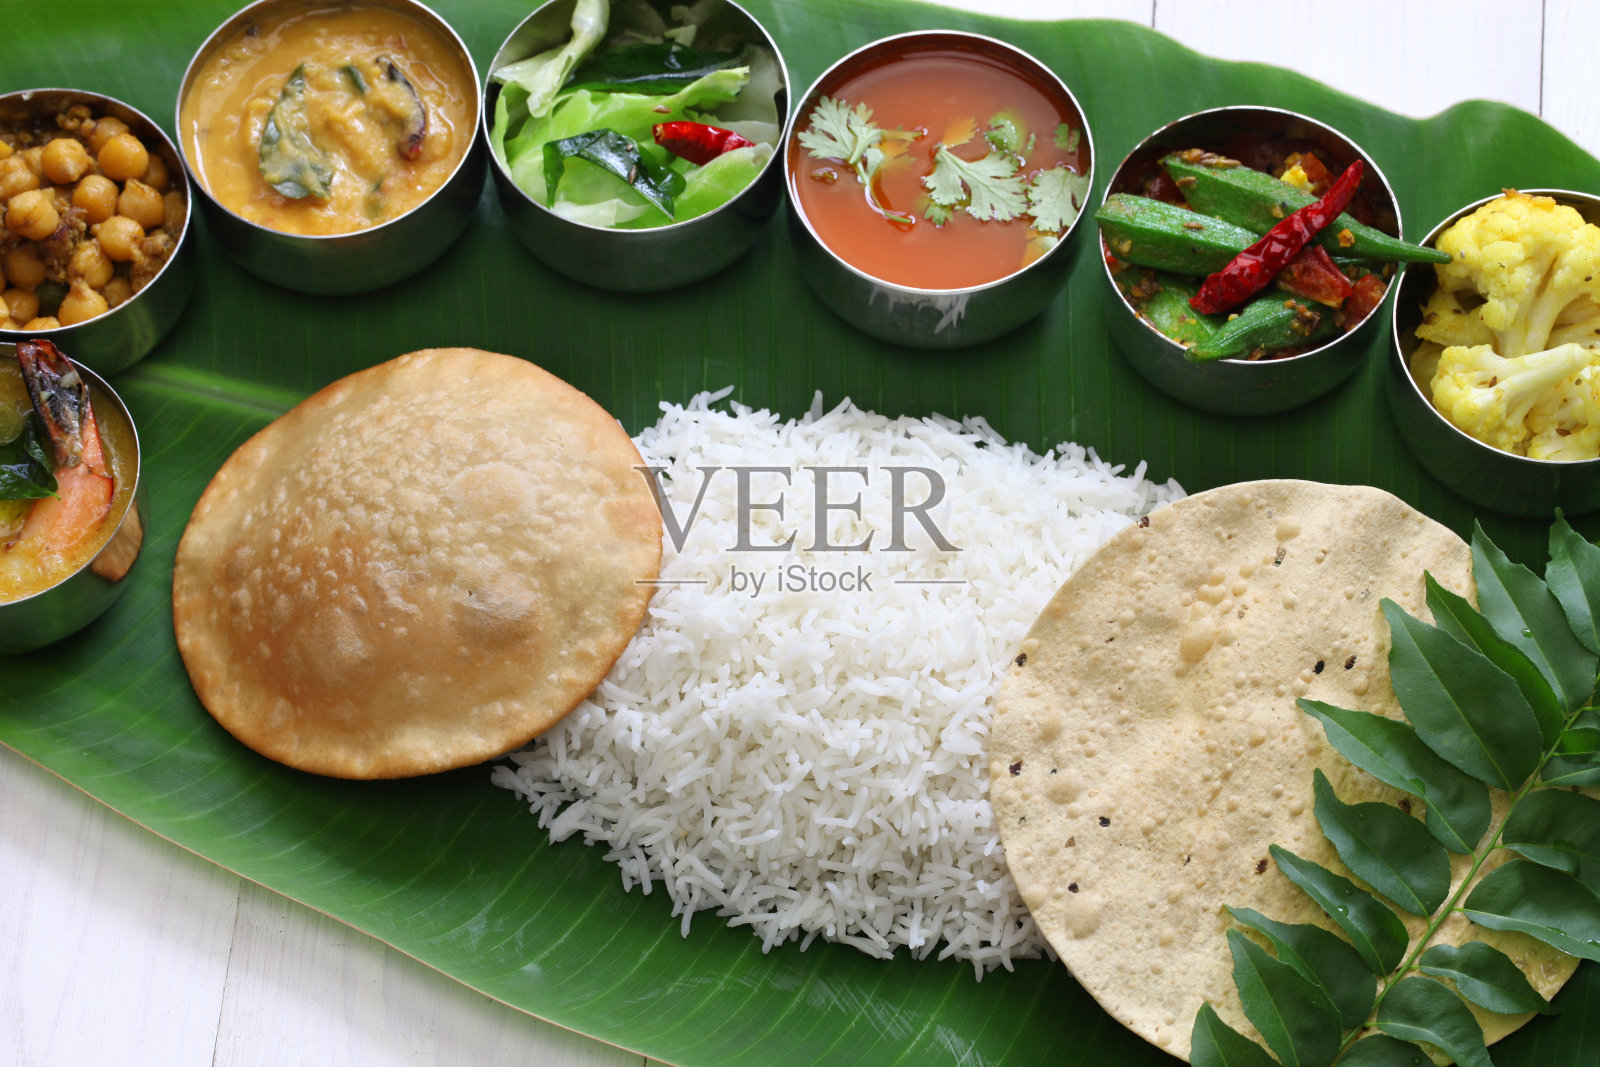 南印度的食物是芭蕉叶照片摄影图片